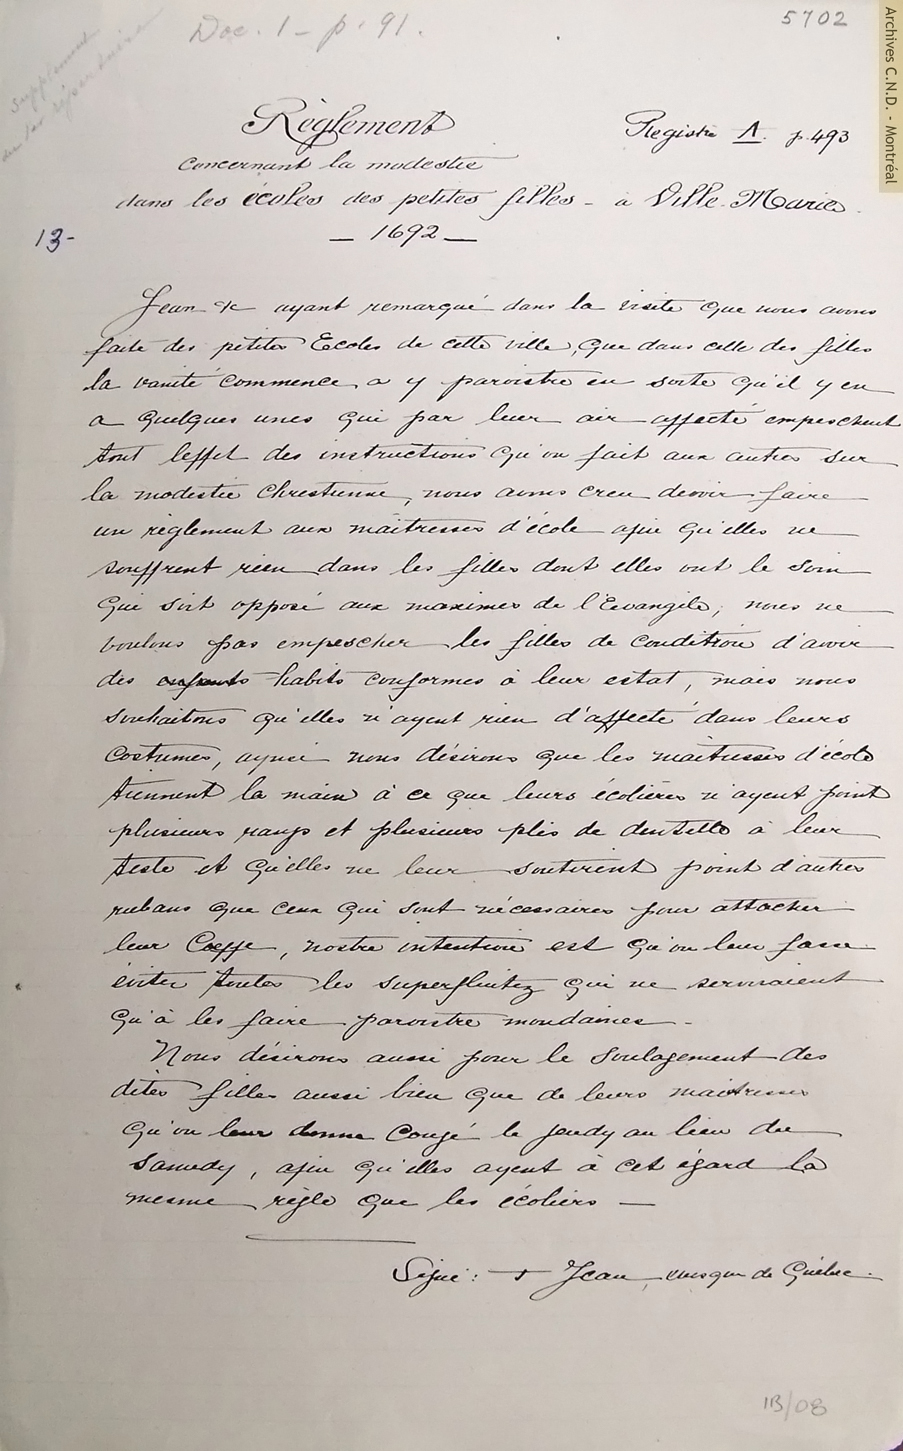 Copia del Reglamento relacionado a la modestia en las escuelas de las niñas en Ville-Marie emitido por Mons. Jean-Baptiste de Lacroix de Chevrières de Saint-Vallier